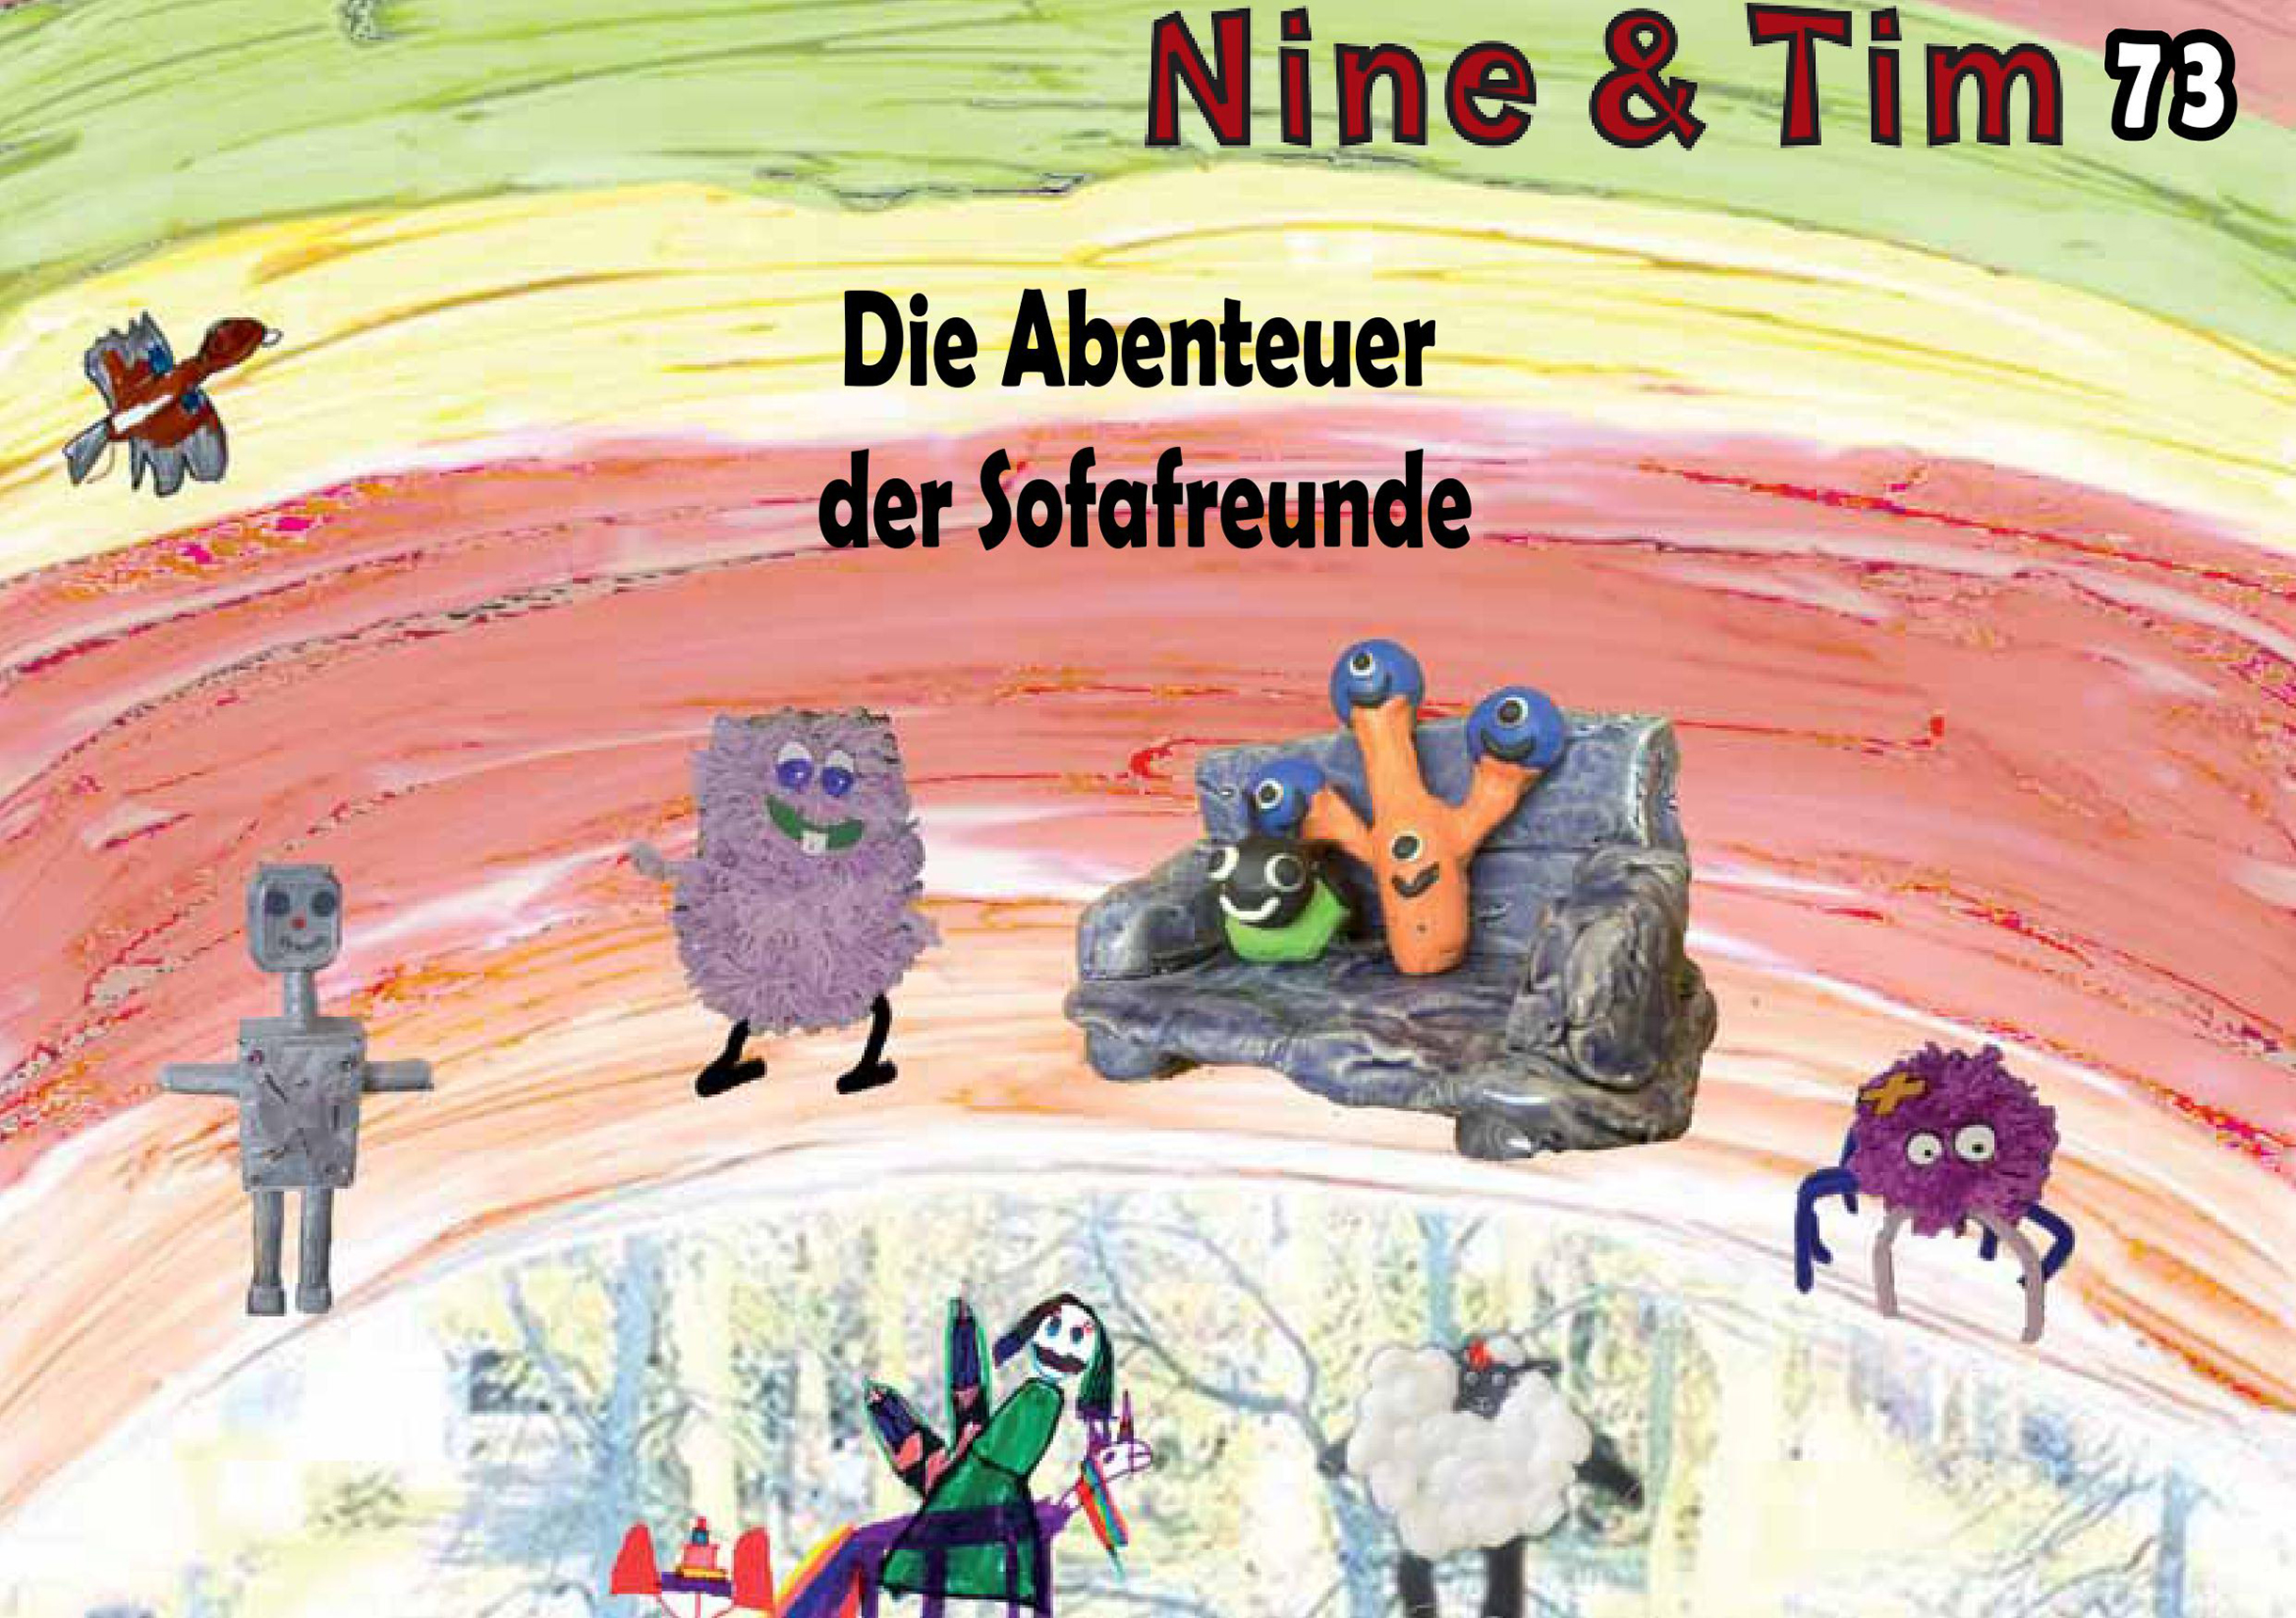 Das Bild zeigt ein Cover der Publikation Nine  Tim Heft 73